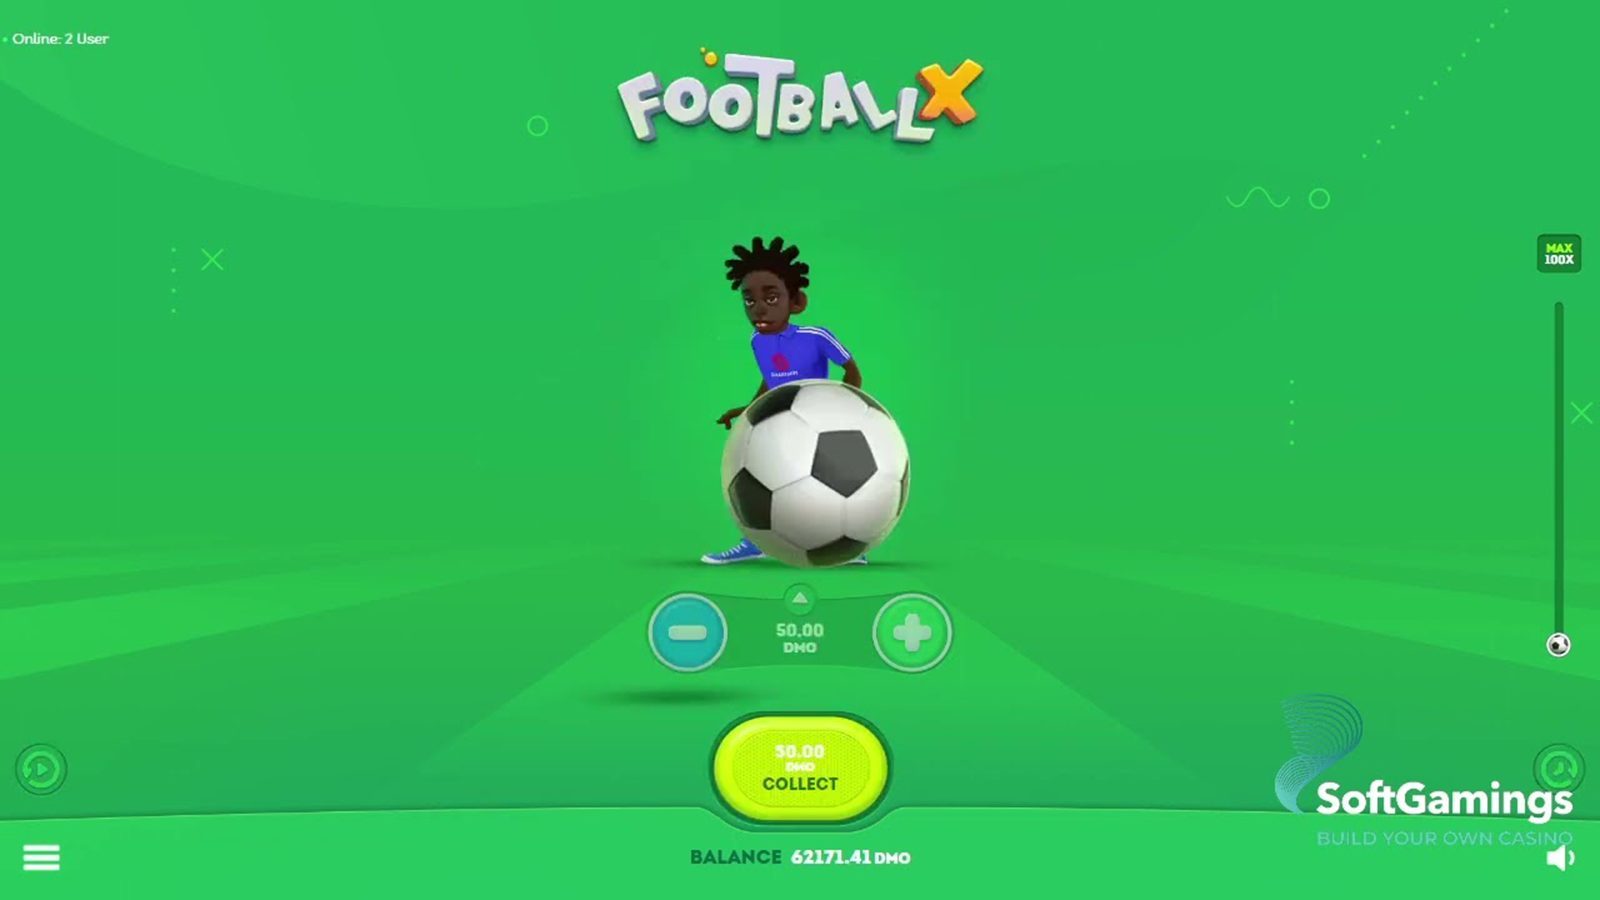 SmartSoft Gaming - Football X - Free Slot Game